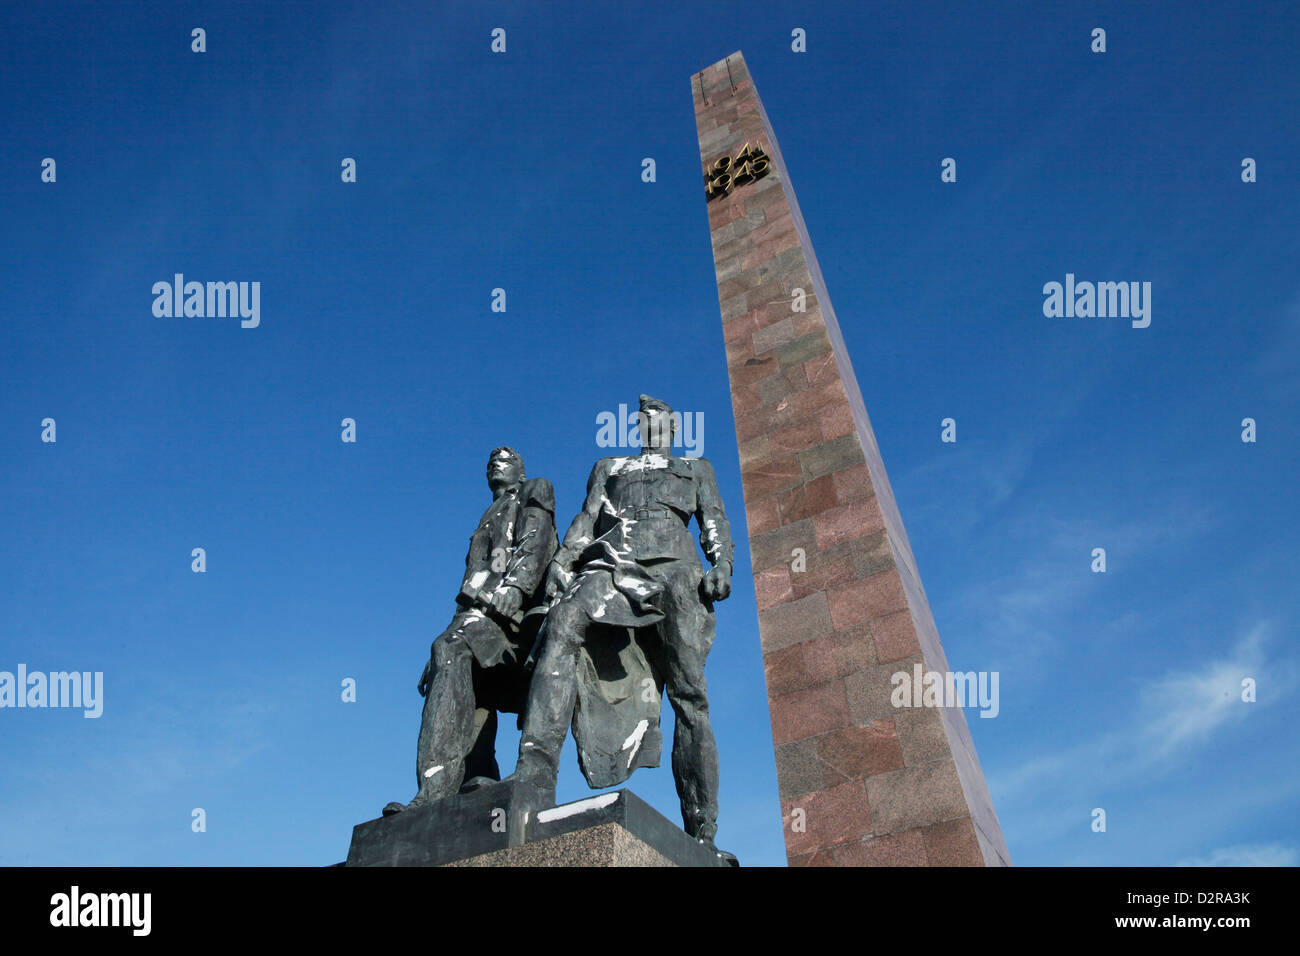 Les figures de bronze de soldats qui ont défendu, au cours de la Seconde Guerre mondiale, la place de la victoire monument commémoratif de guerre, Saint-Pétersbourg, Russie Banque D'Images